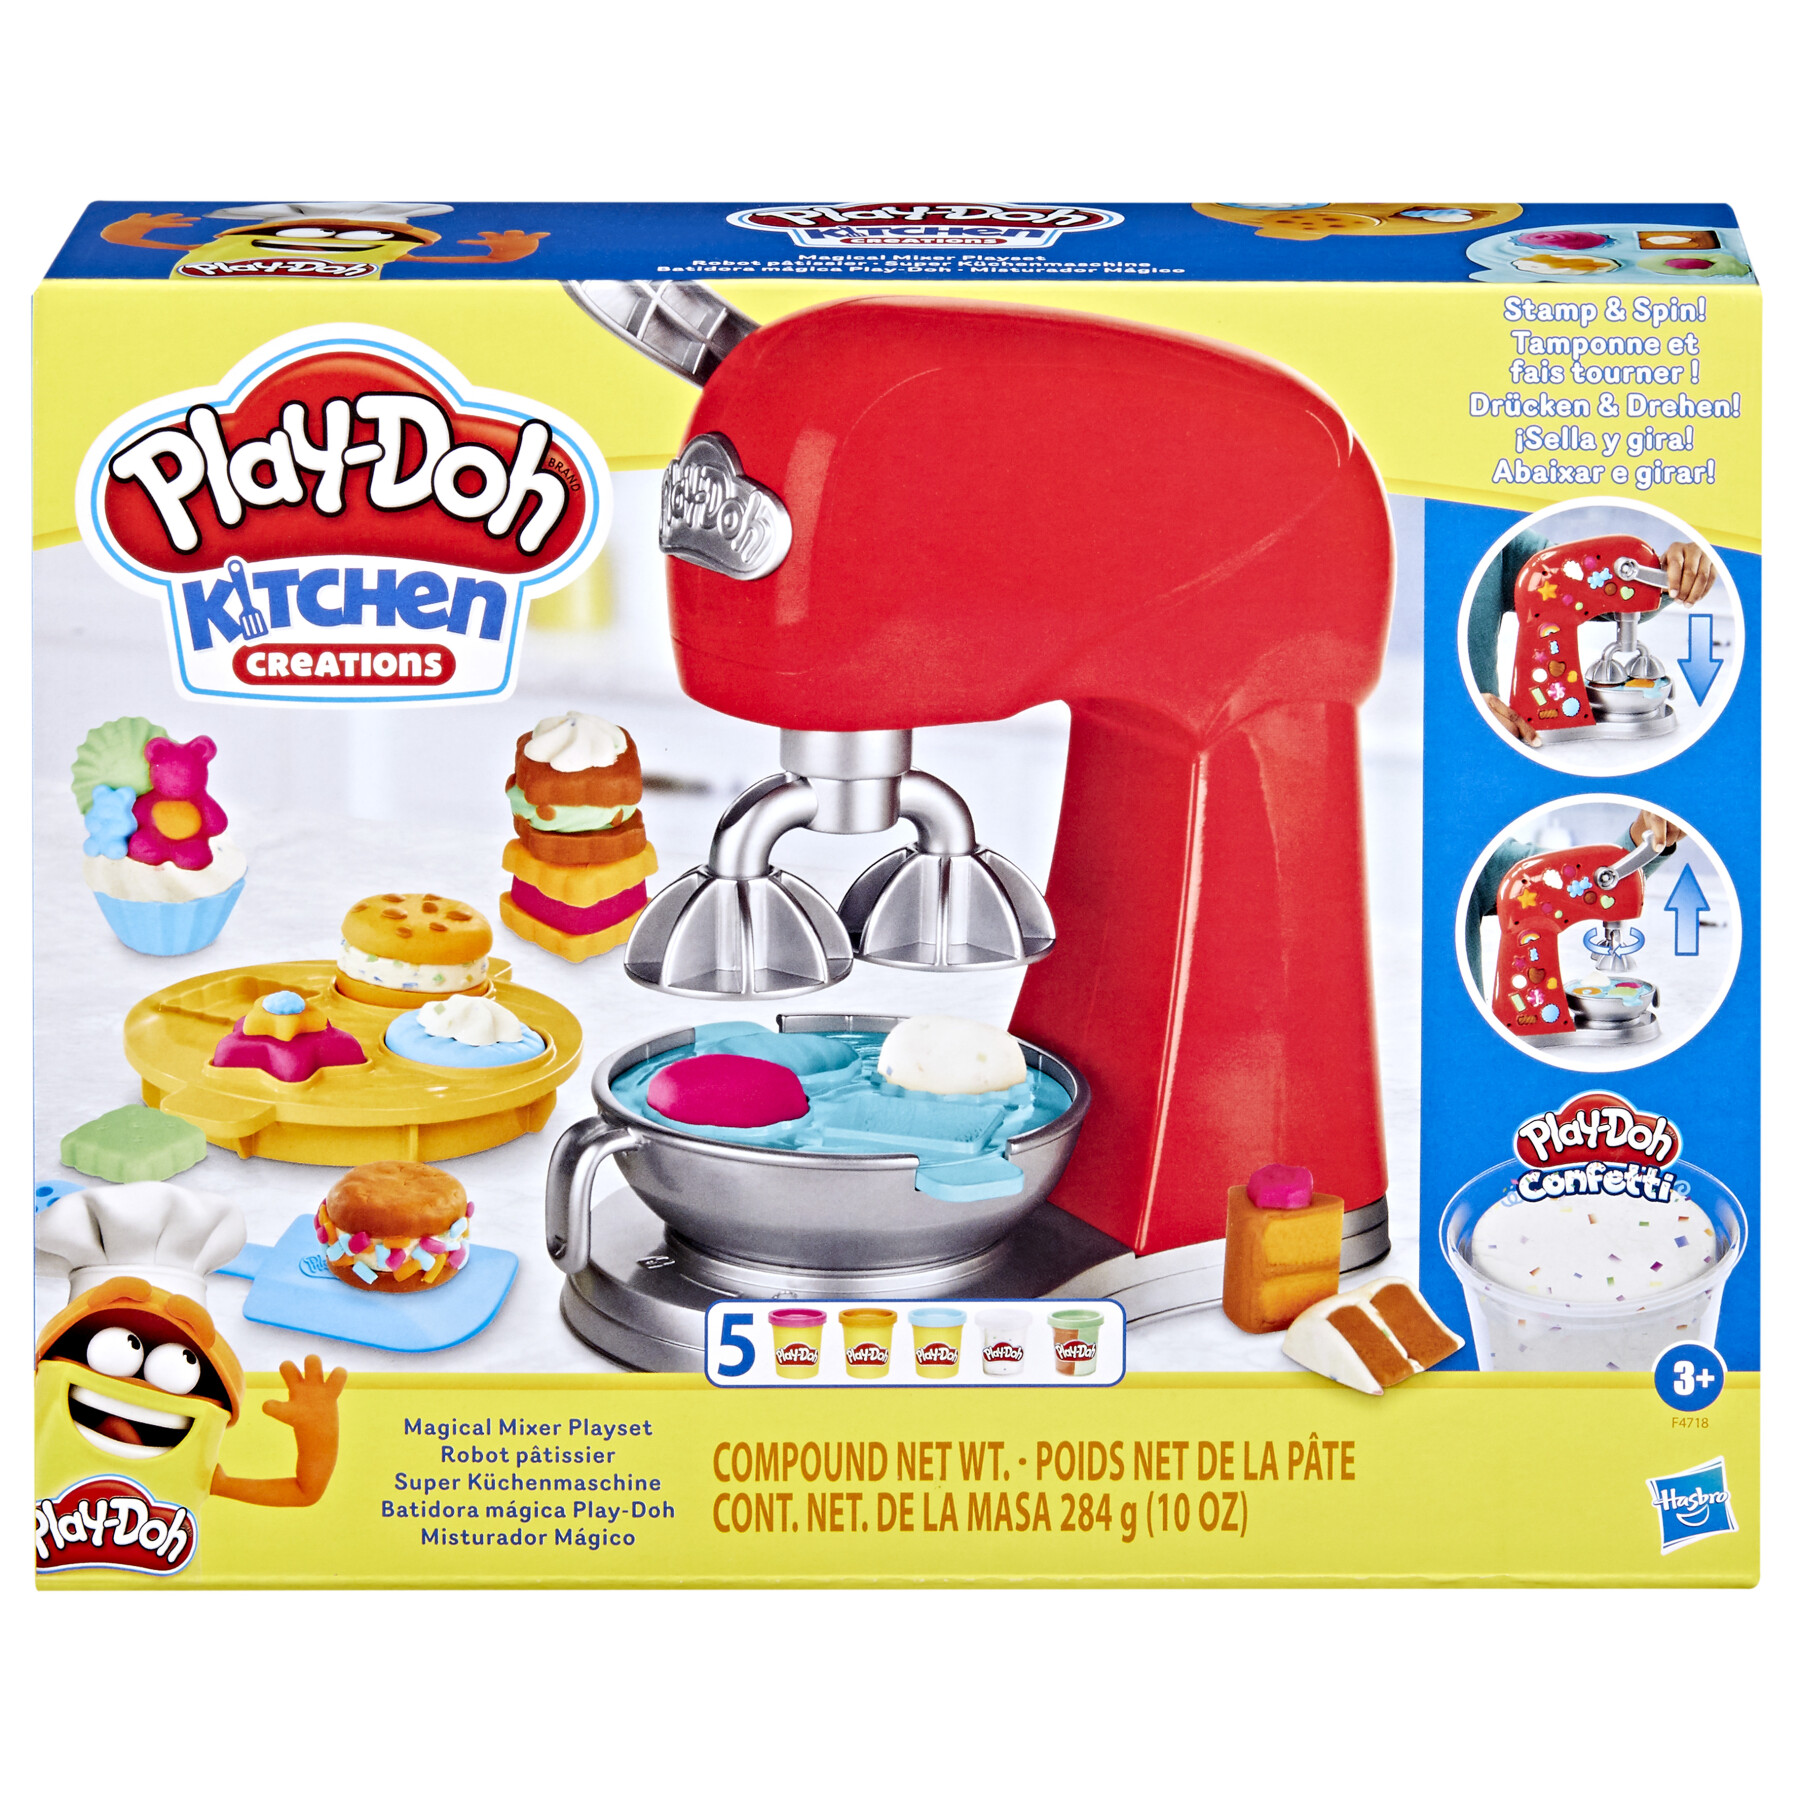 Play-doh kitchen creations - il magico mixer, impastatrice giocattolo con  finti accessori da cucina - Toys Center